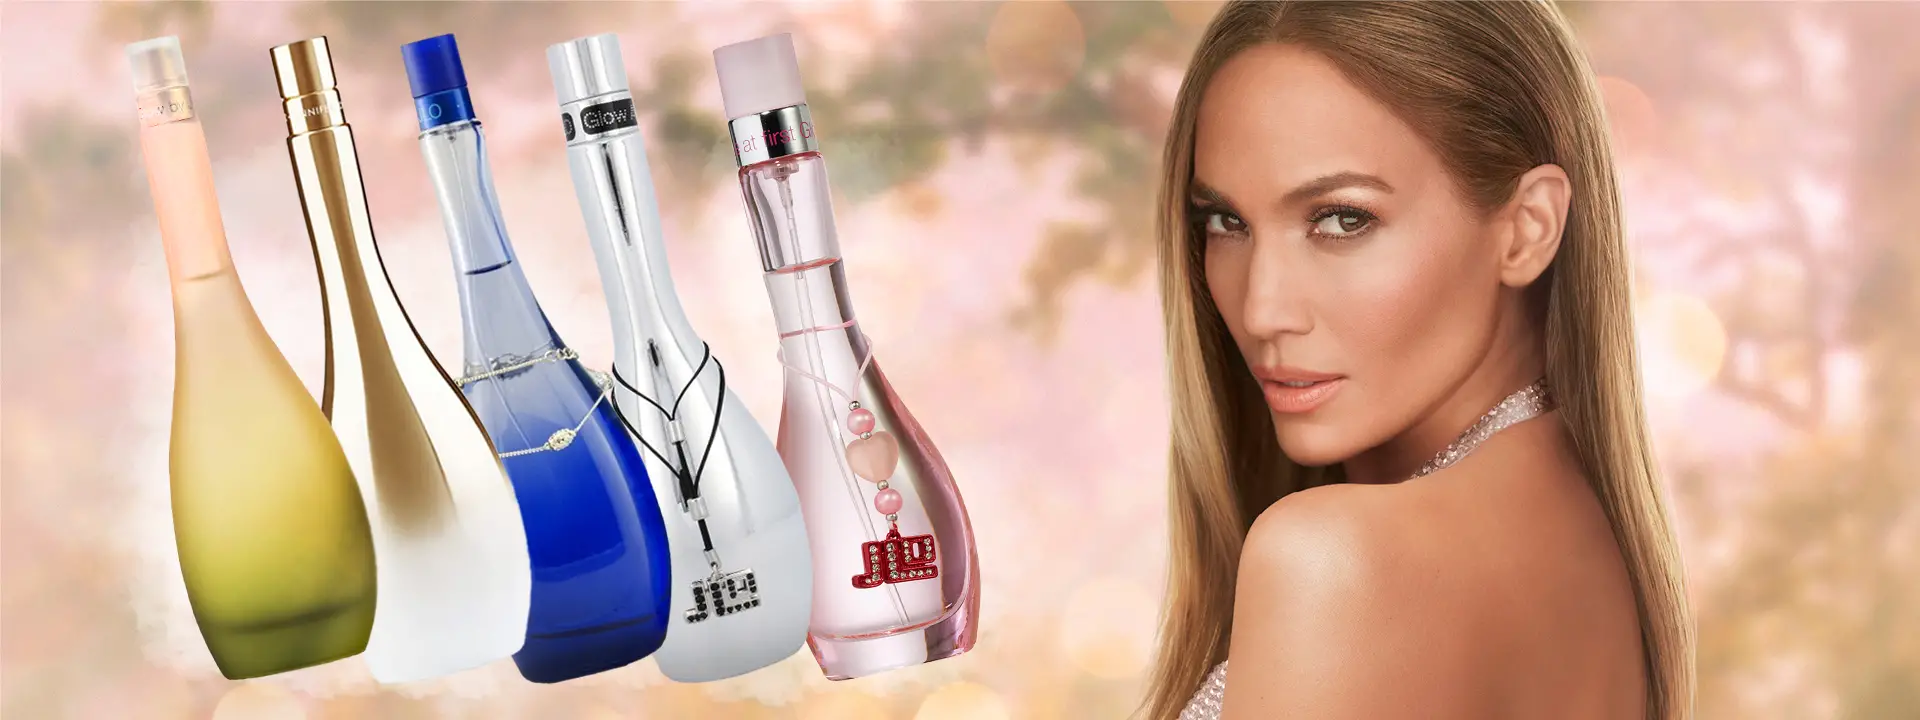 สุดยอดคู่มือสำหรับกลุ่มน้ำหอม JLo Glow ของ Jennifer Lopez